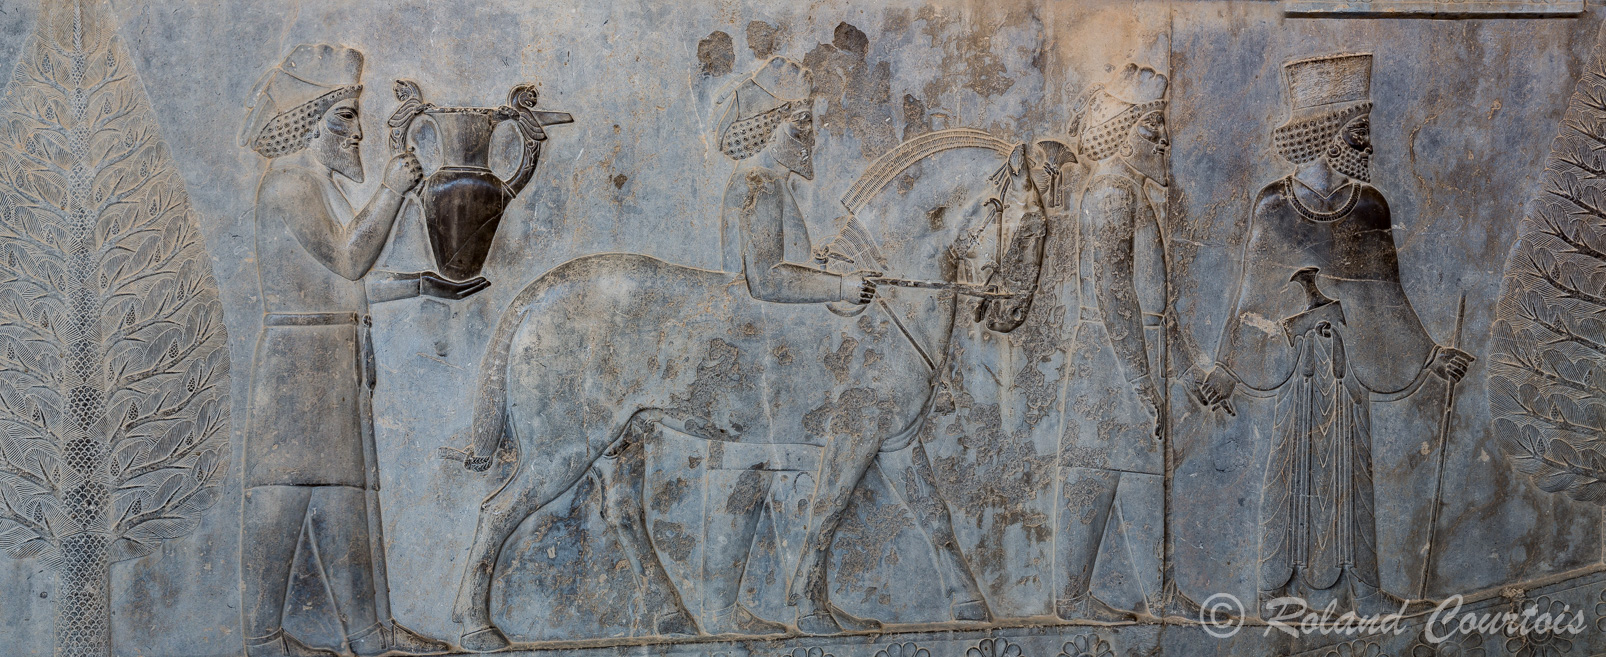 Persepolis :  Frise des Tributaires, Les Arméniens, avec cheval à la crinière en 3 étages, apportent un vase magnifique.